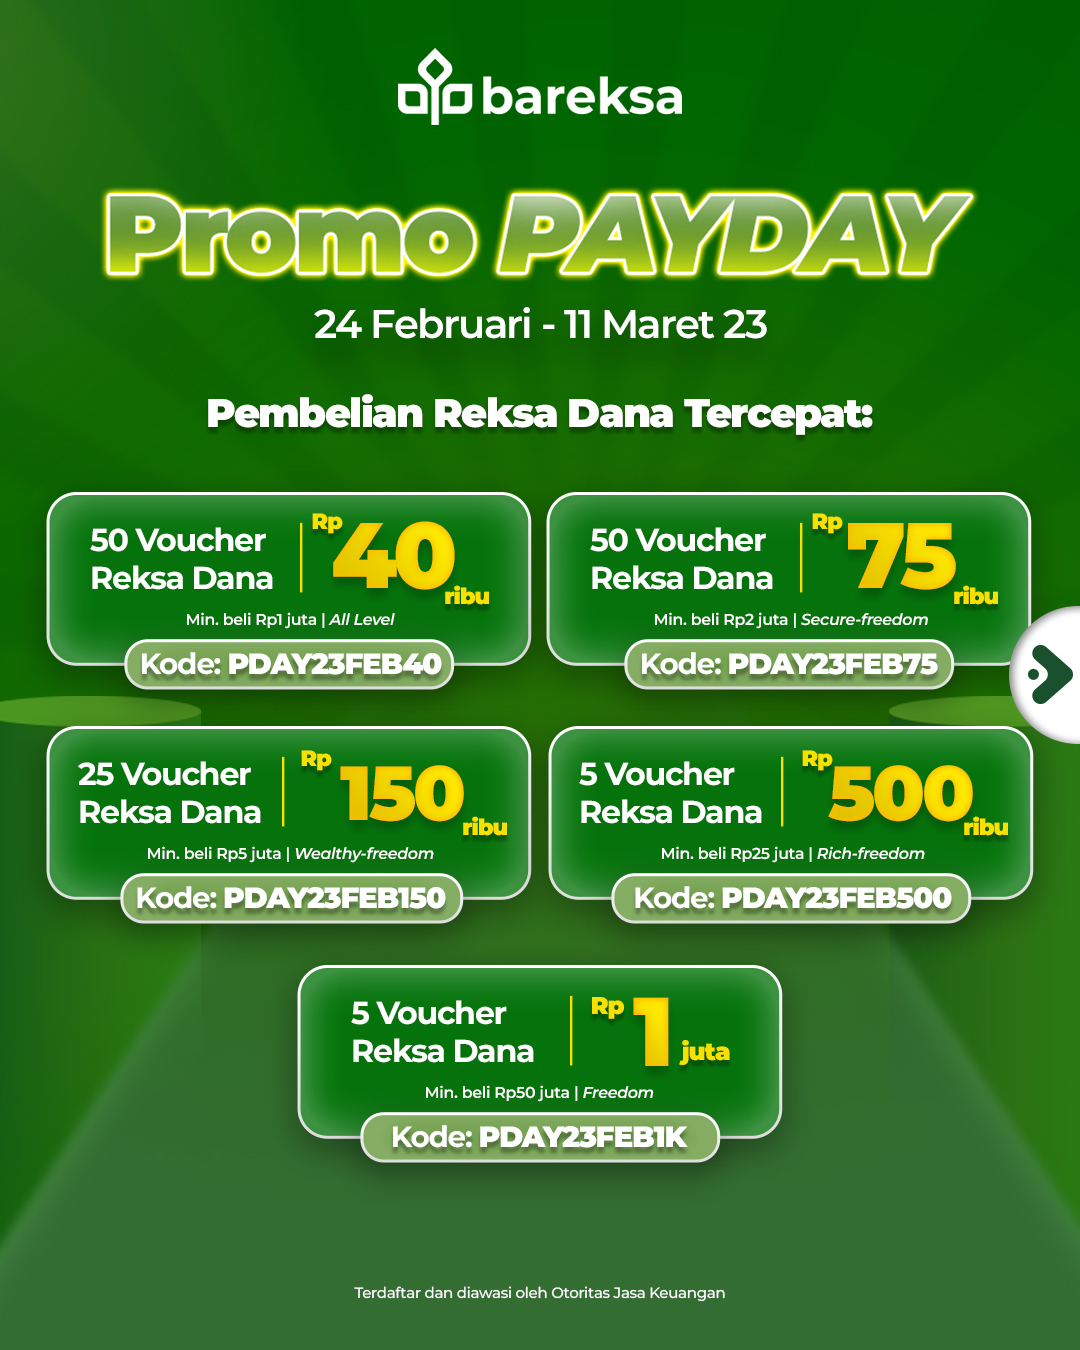 Selamat! Ini Pemenang Promo Payday Februari 2023 Berhadiah Reksadana hingga Rp1 Juta